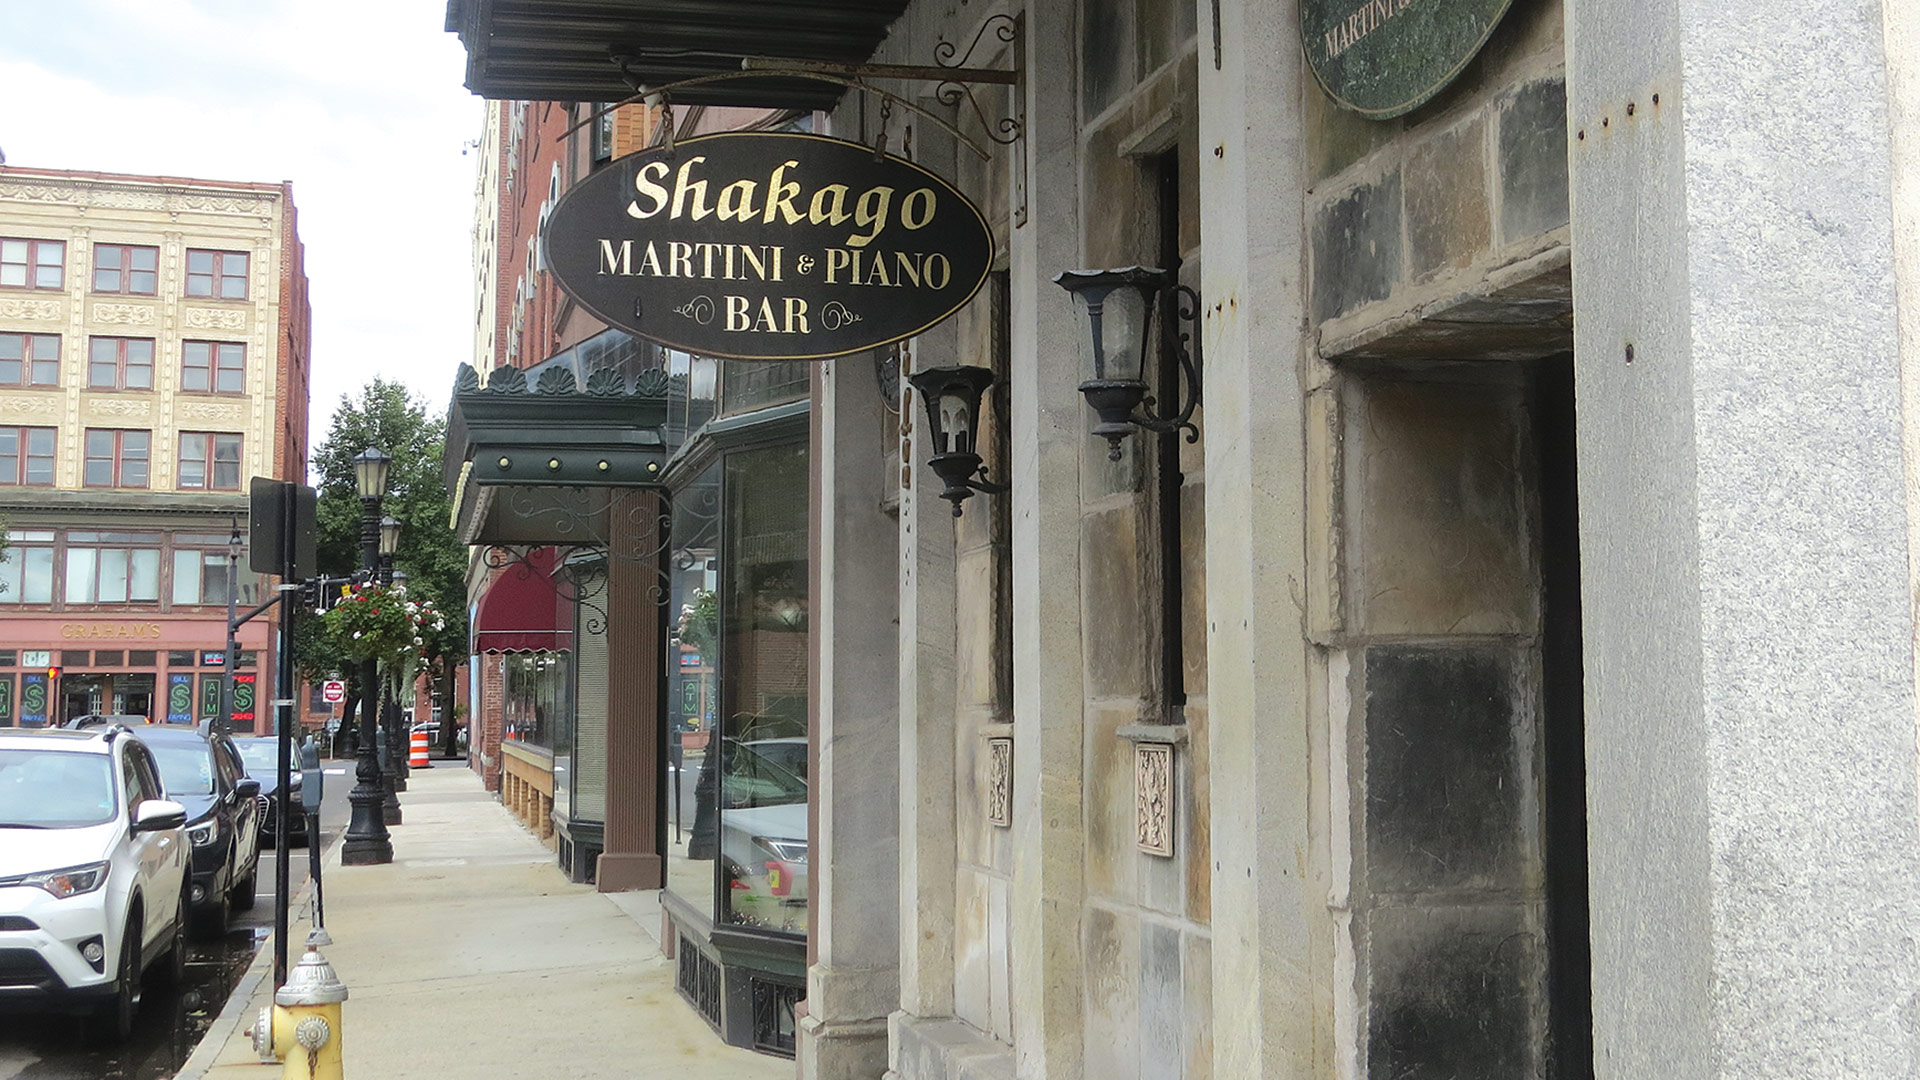 Shakago Martini & Piano Bar